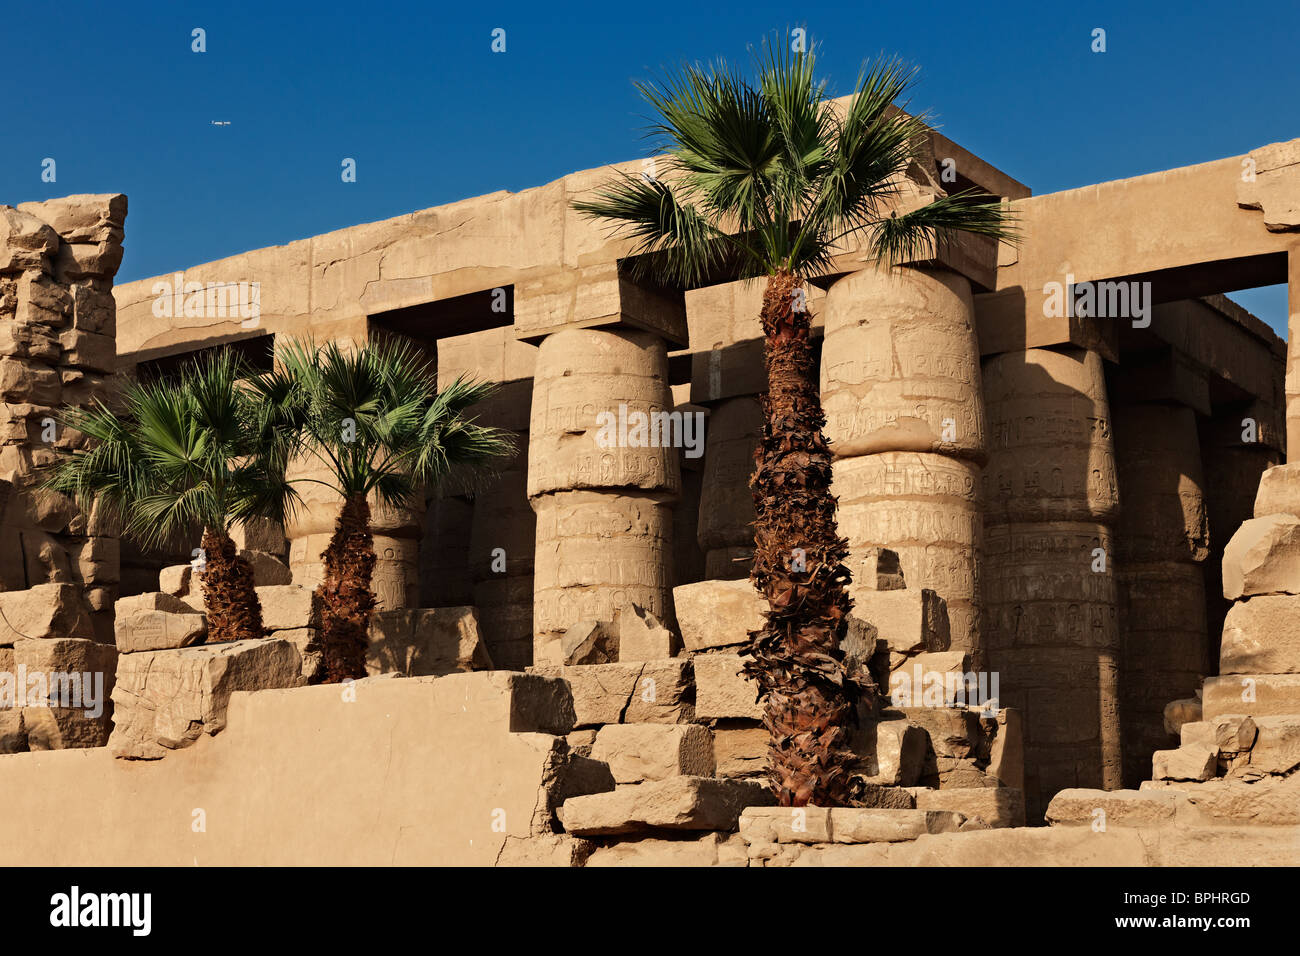 Salle hypostyle de Karnak, situé dans le complexe du temple de Karnak, Louxor, Thèbes, en Egypte, en Arabie, en Afrique Banque D'Images